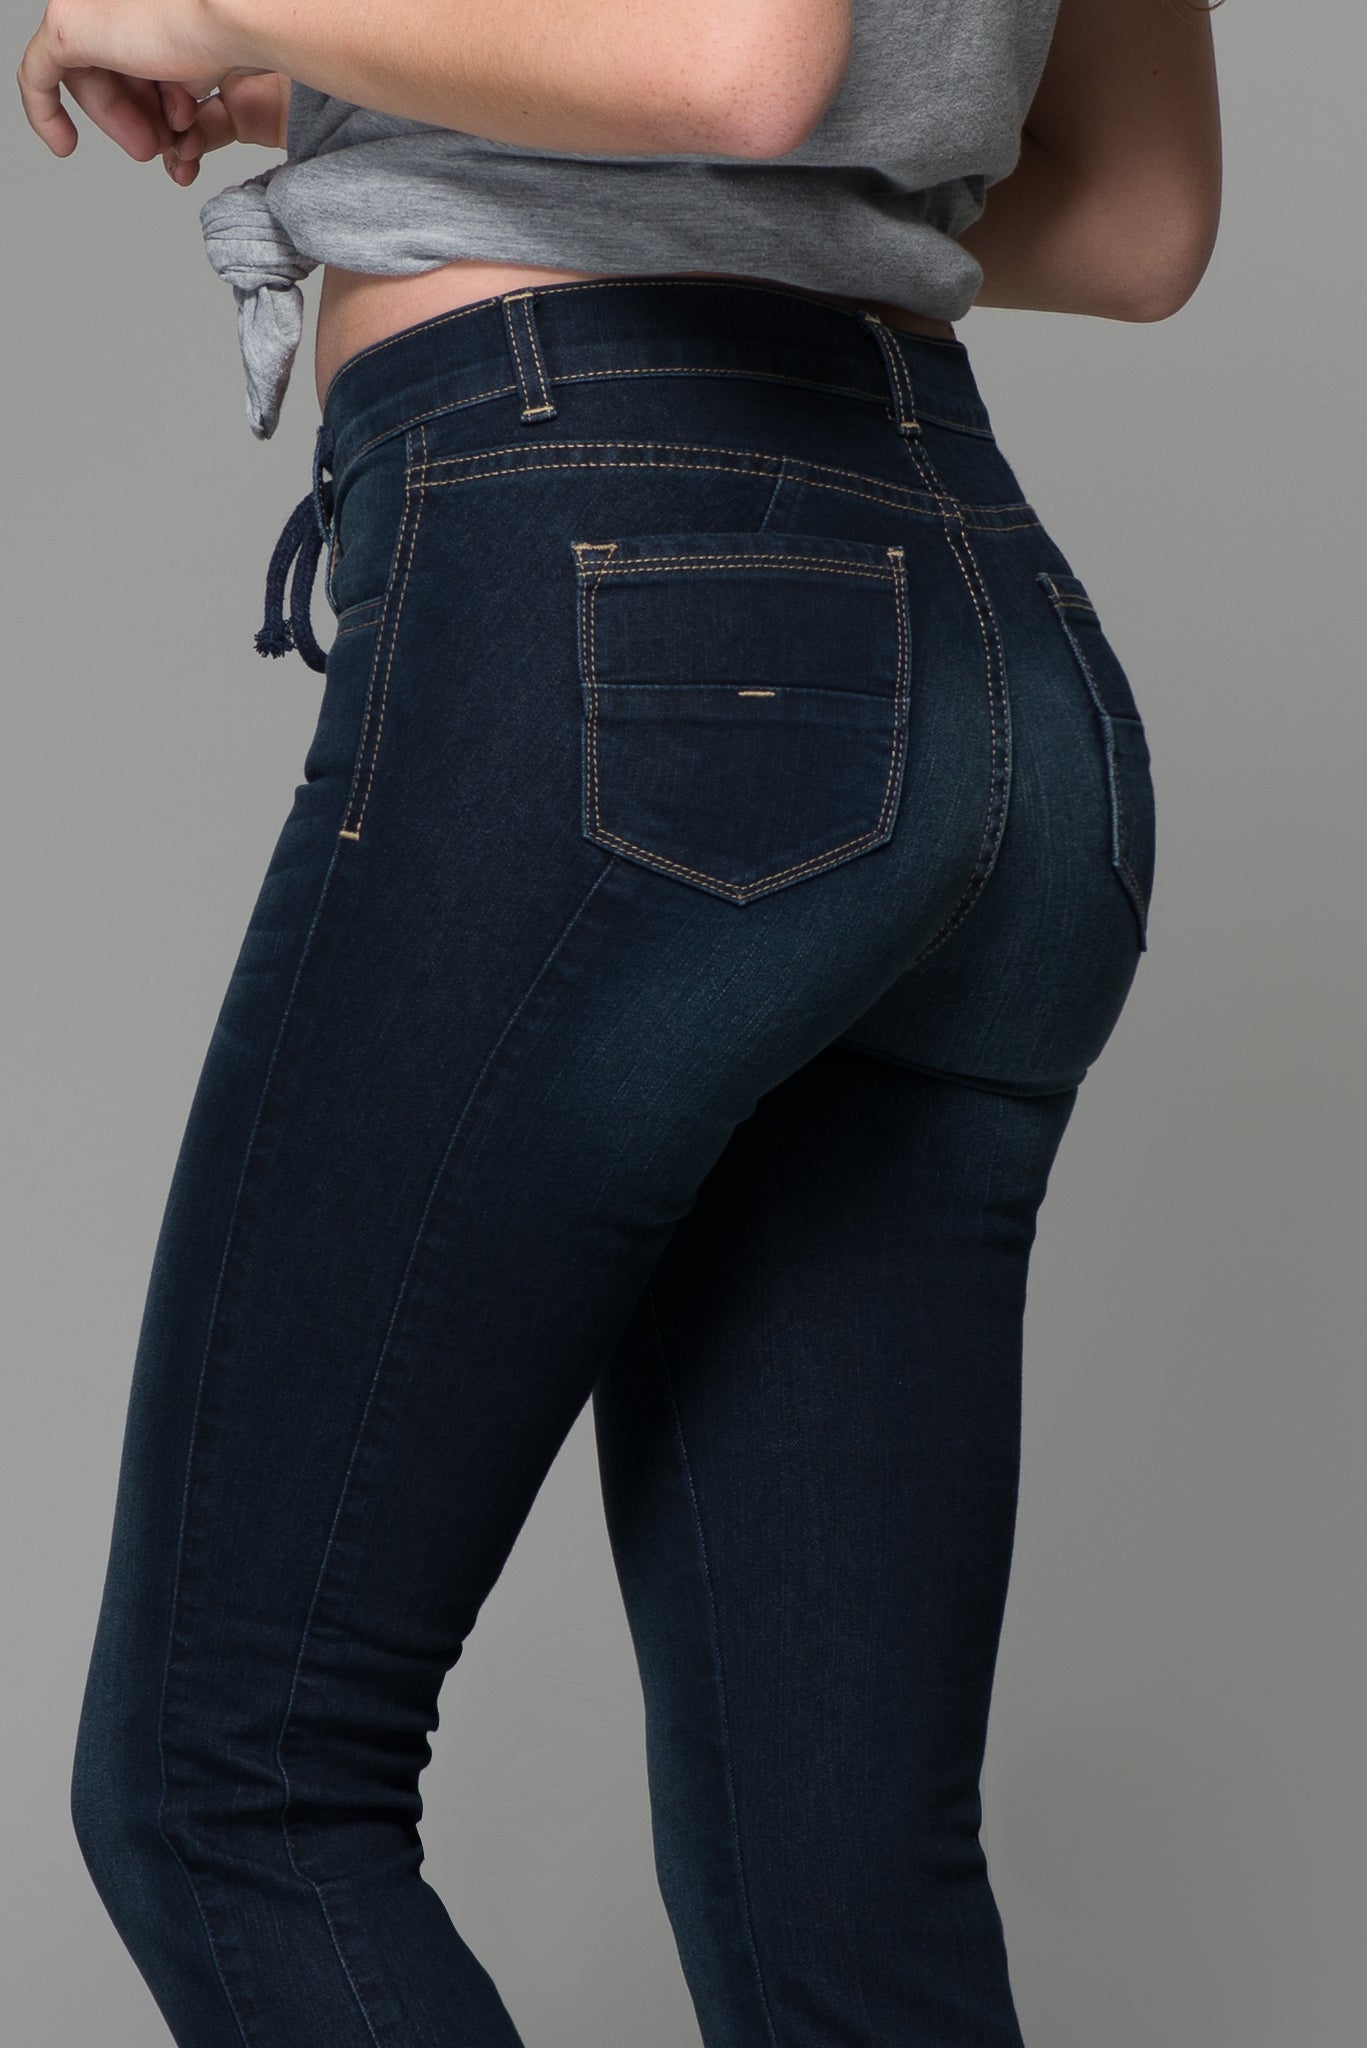 OHPOMP!® Cintura Media Super Skinny Jeans Azul Oscuro T020